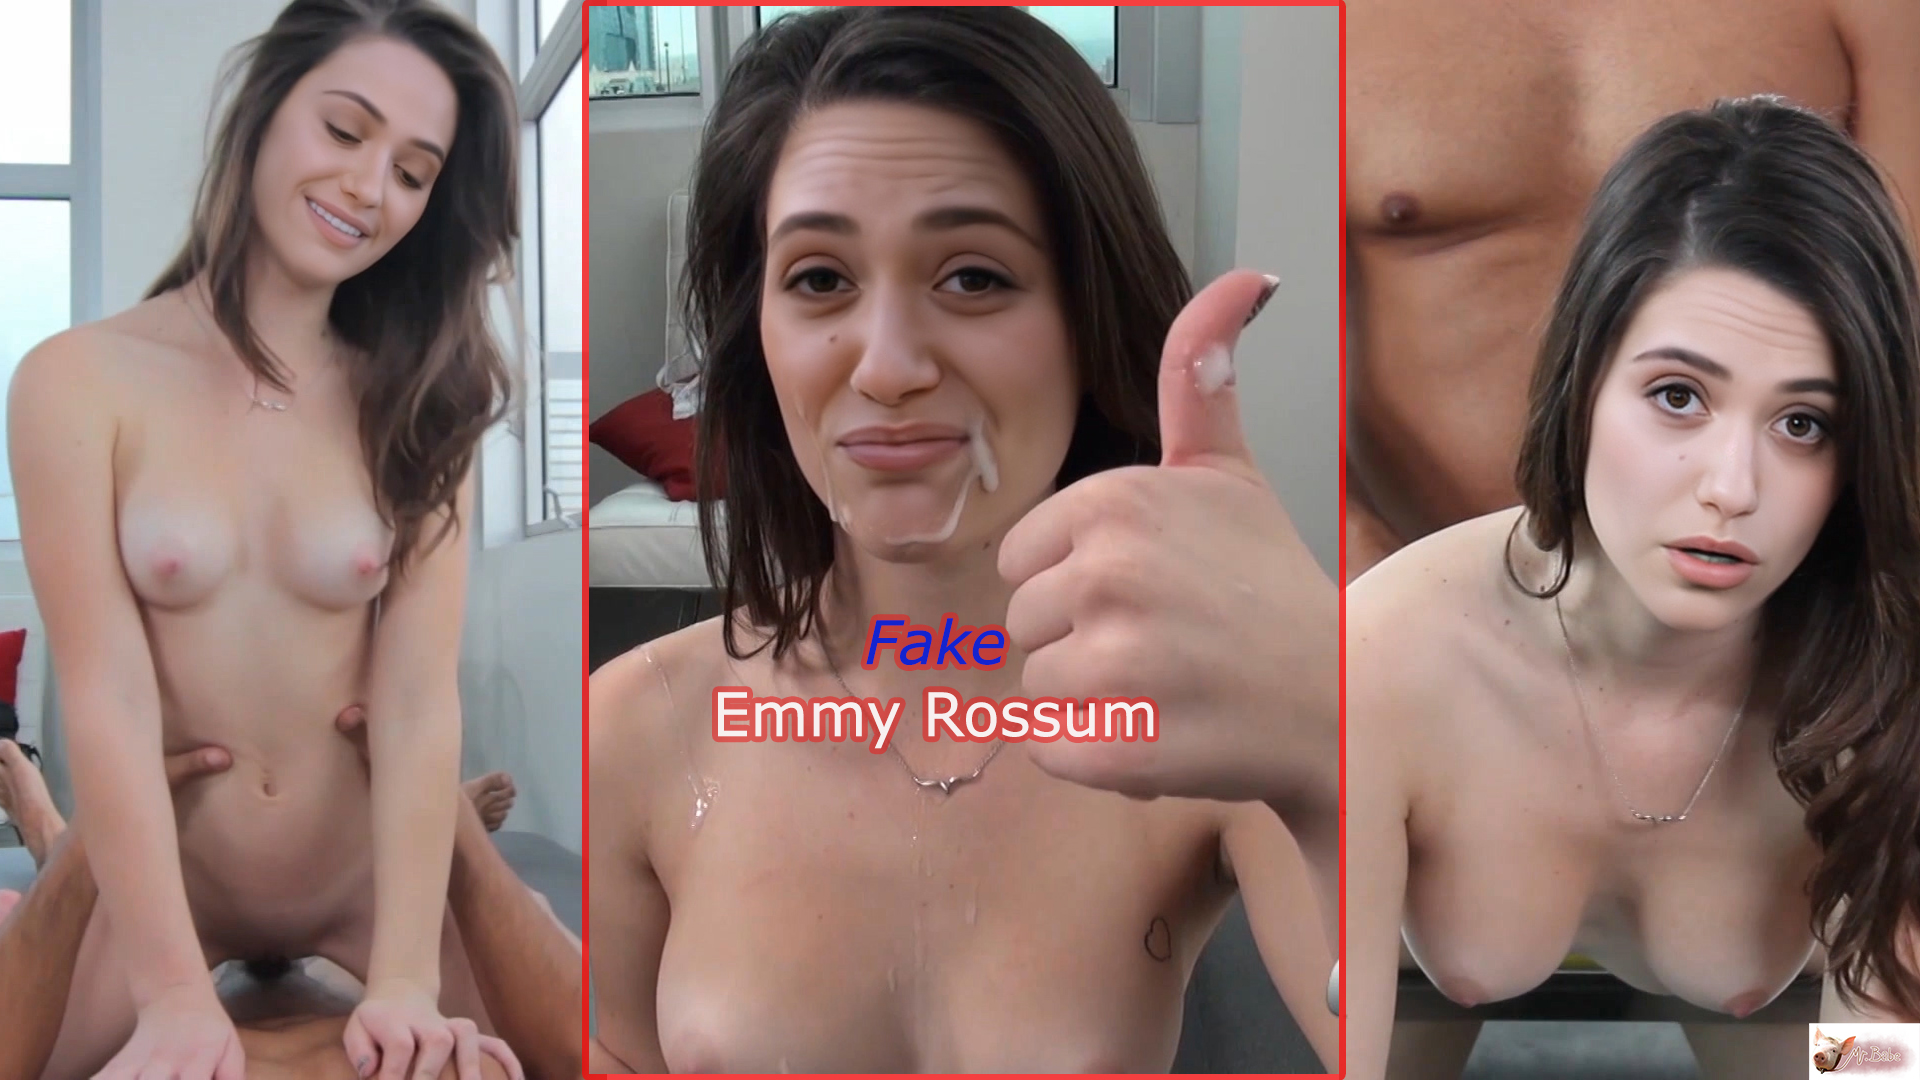 Emmy rossum deepfake porn